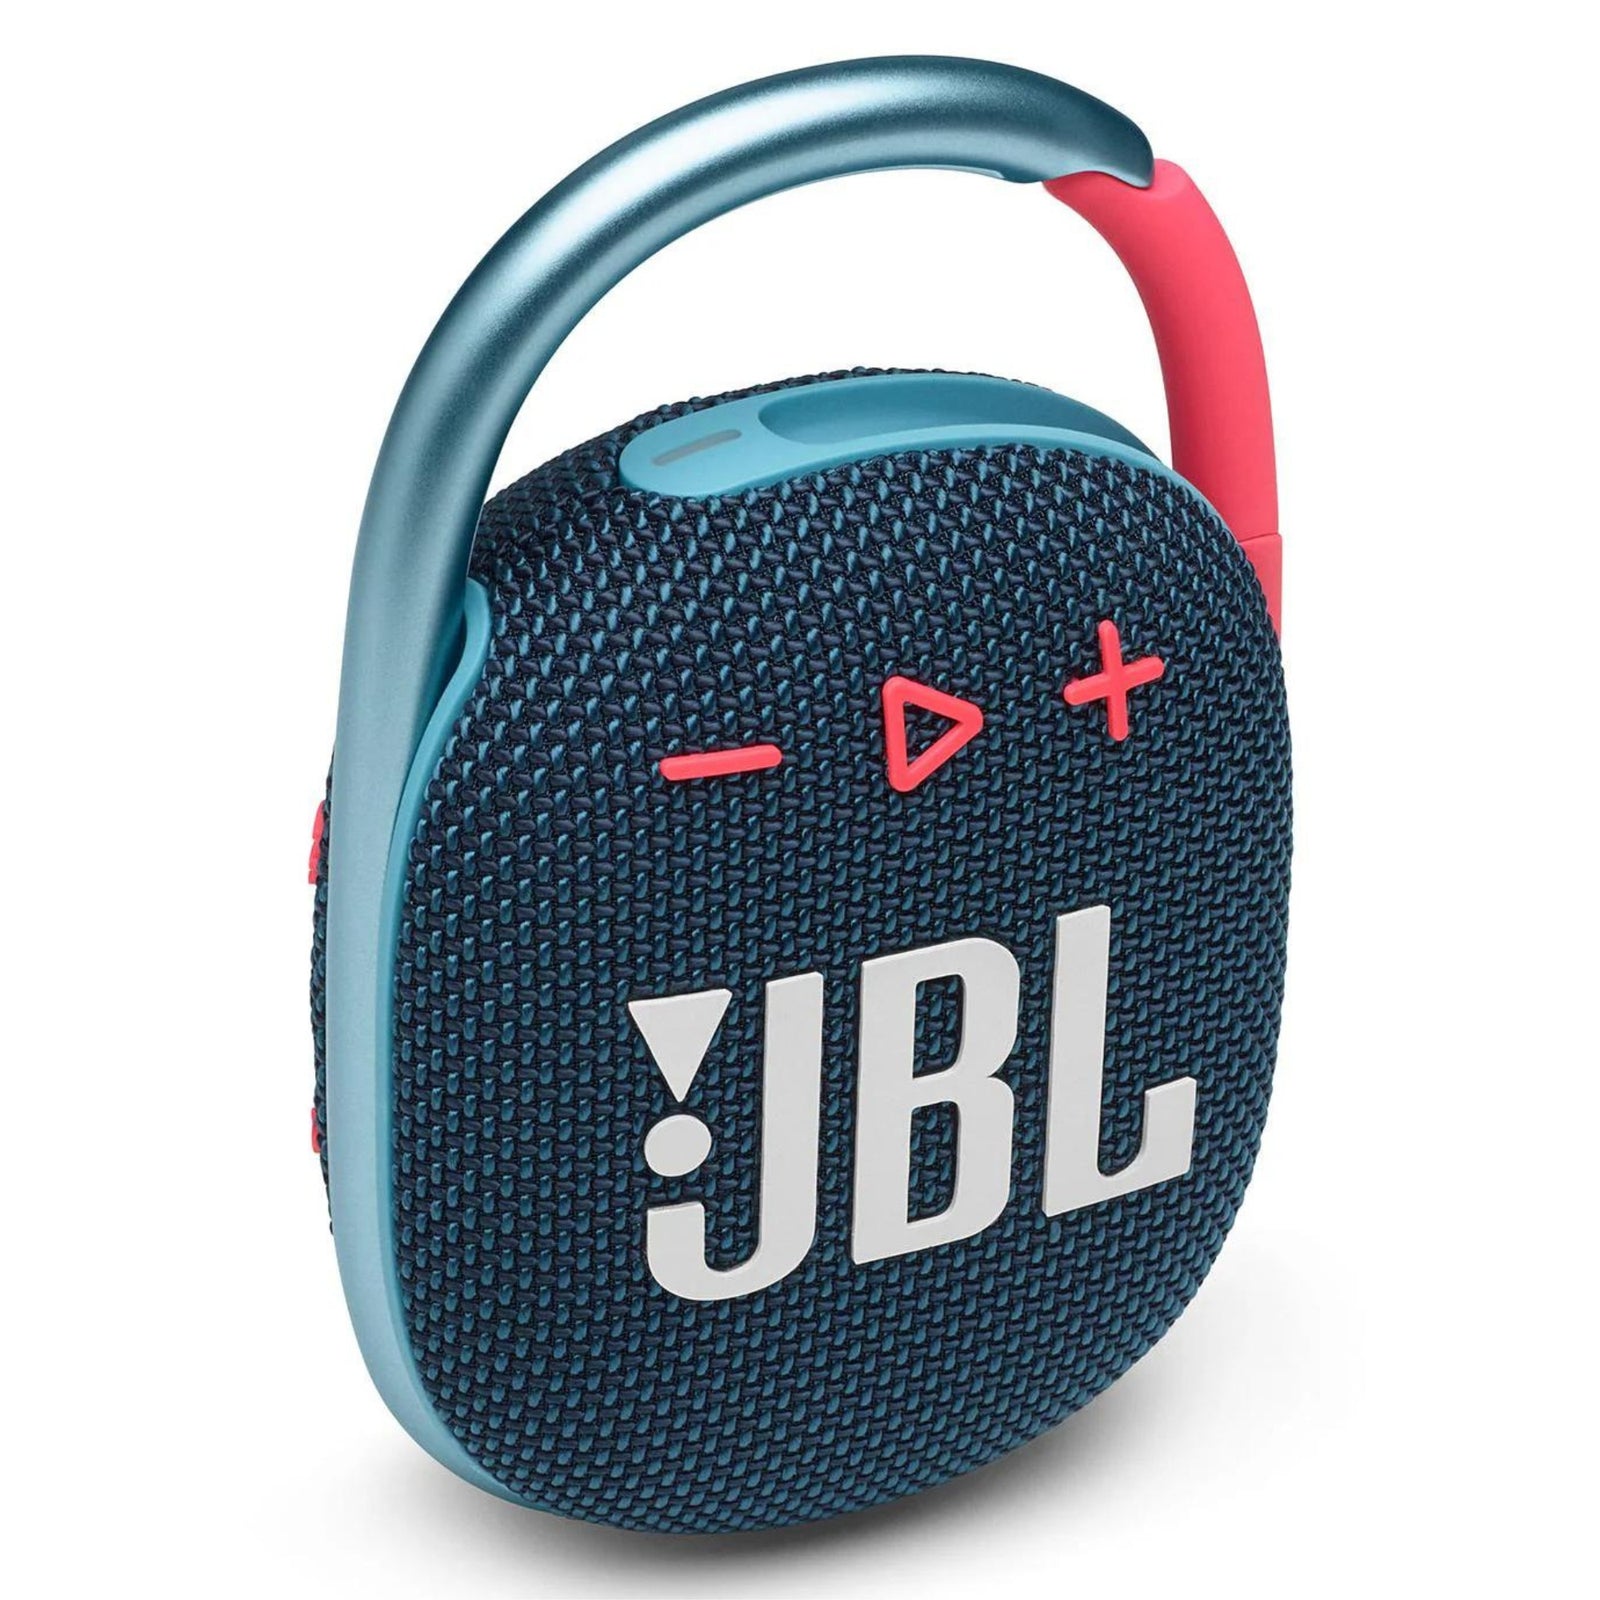 JBL Clip 4 Ultra-portable Ipx7 Waterproof Speaker